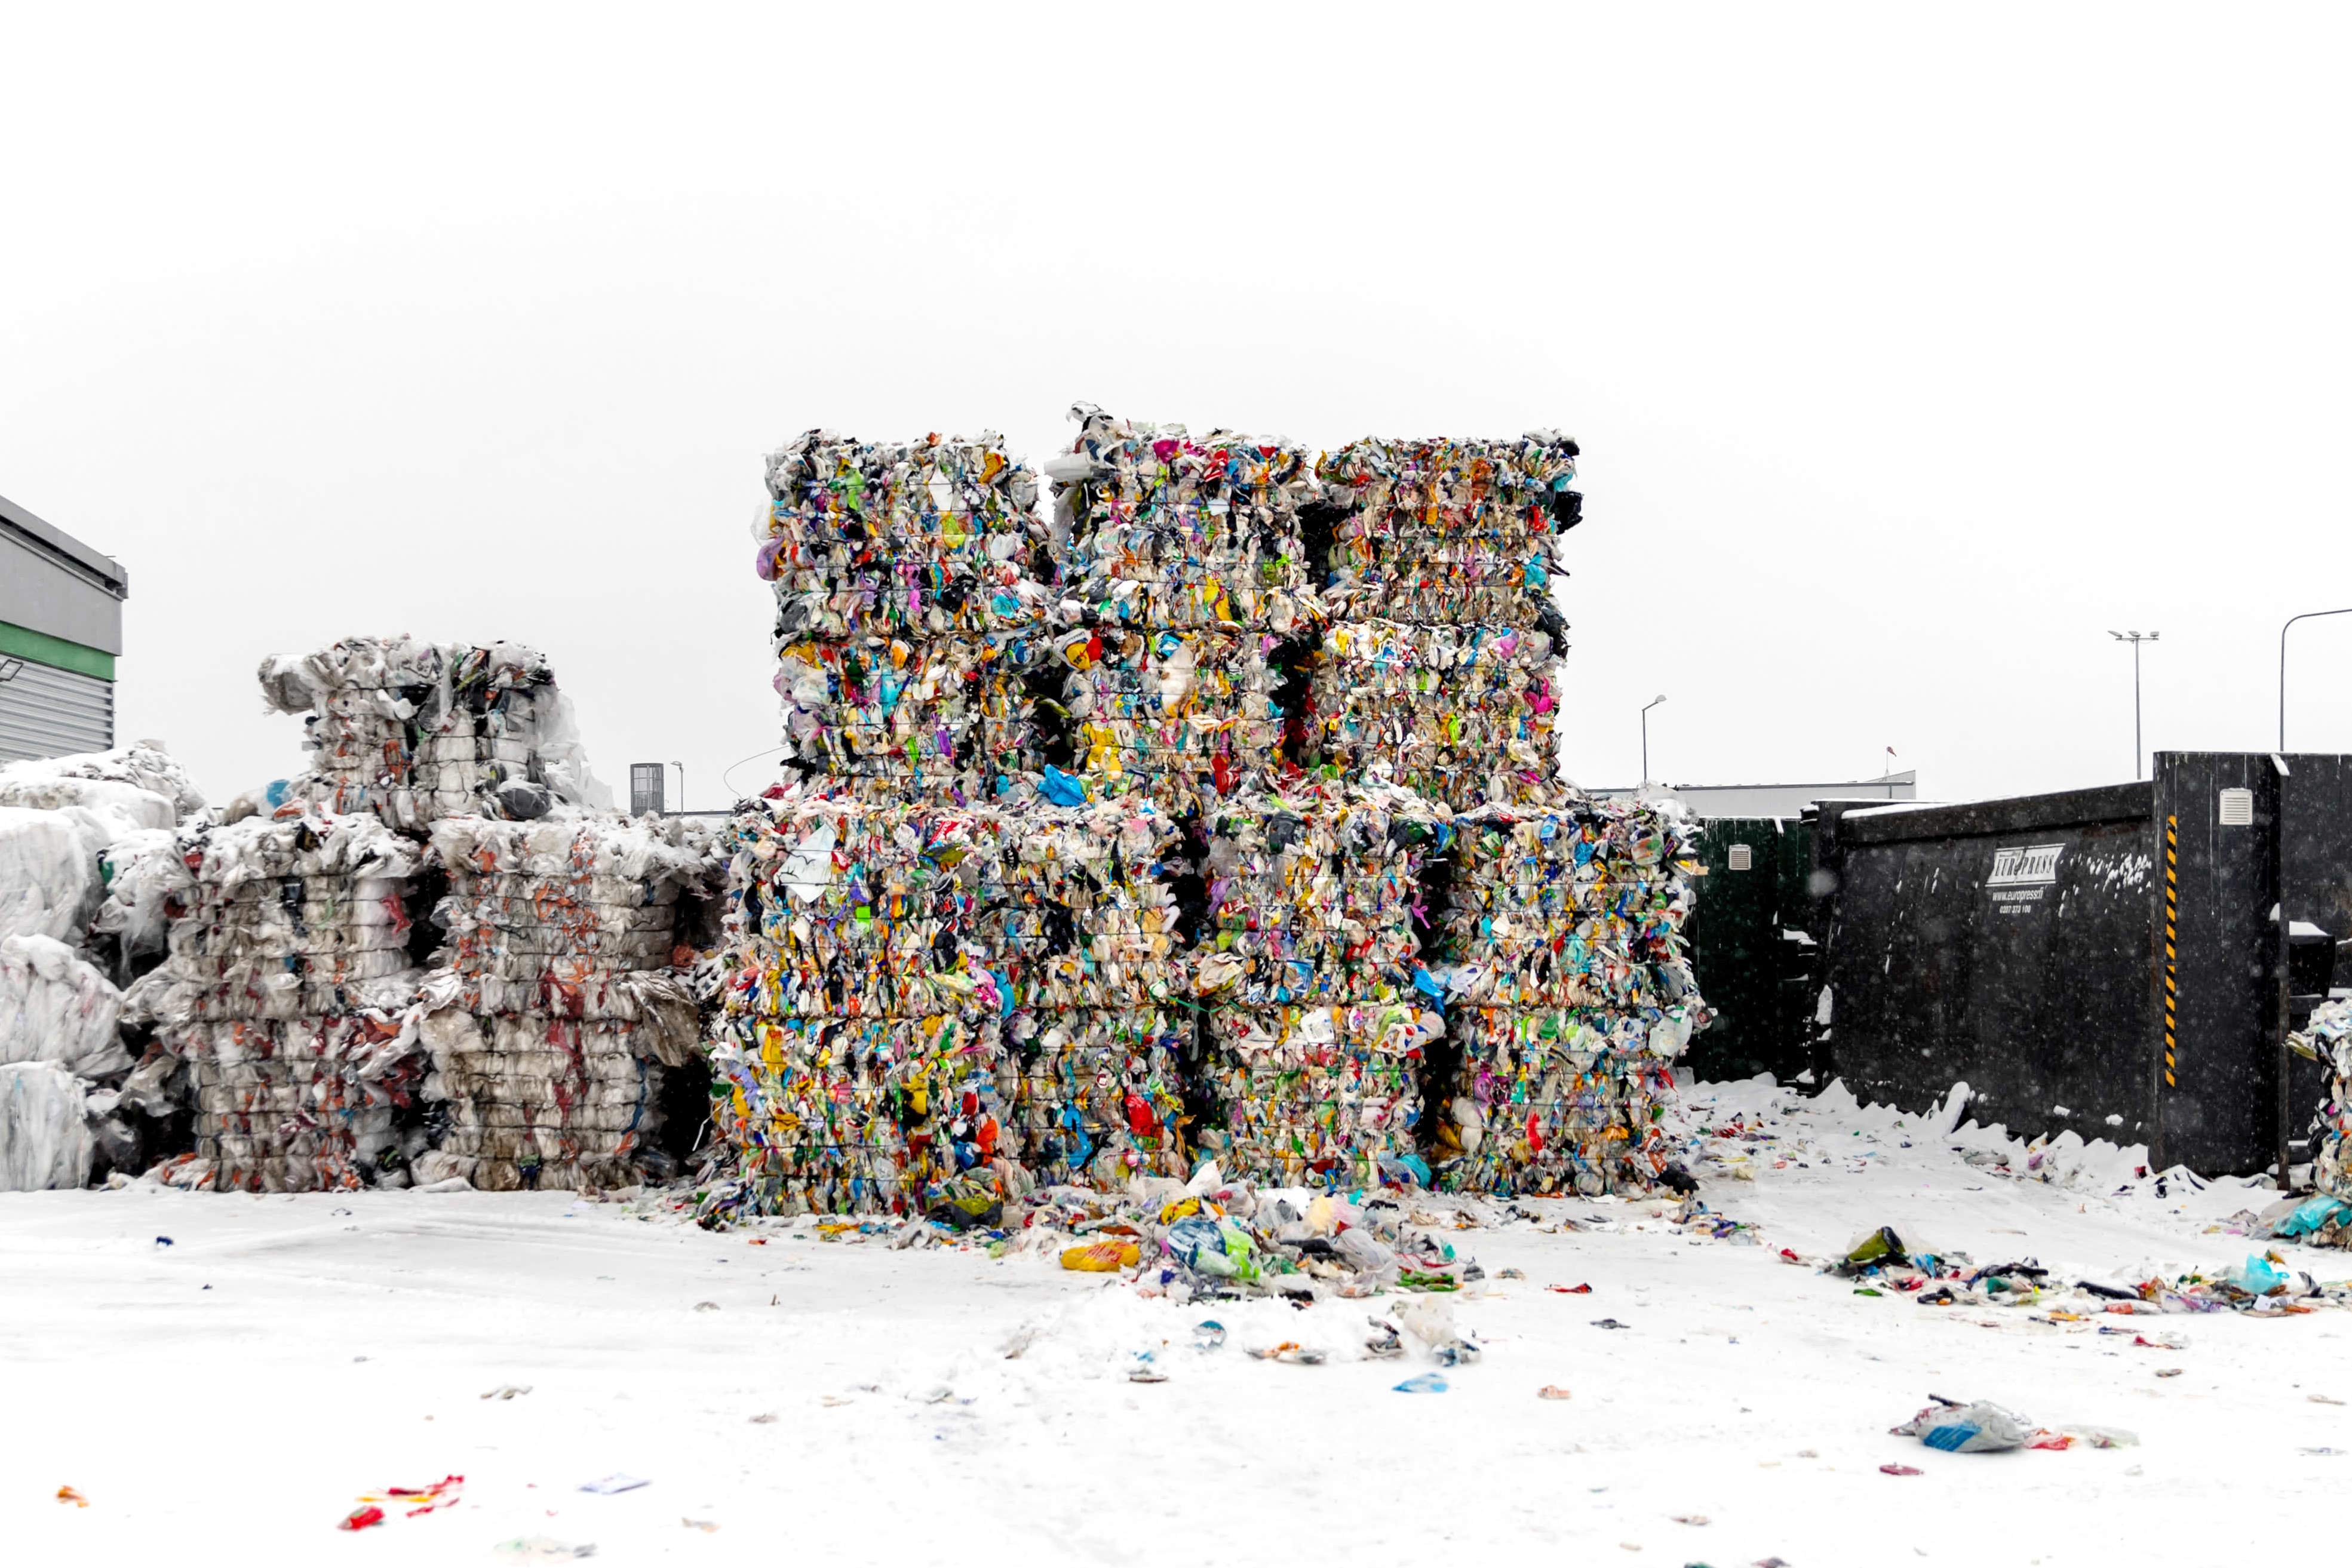 Bericht: Der größte Teil des sortierten Plastikmülls wird verbrannt